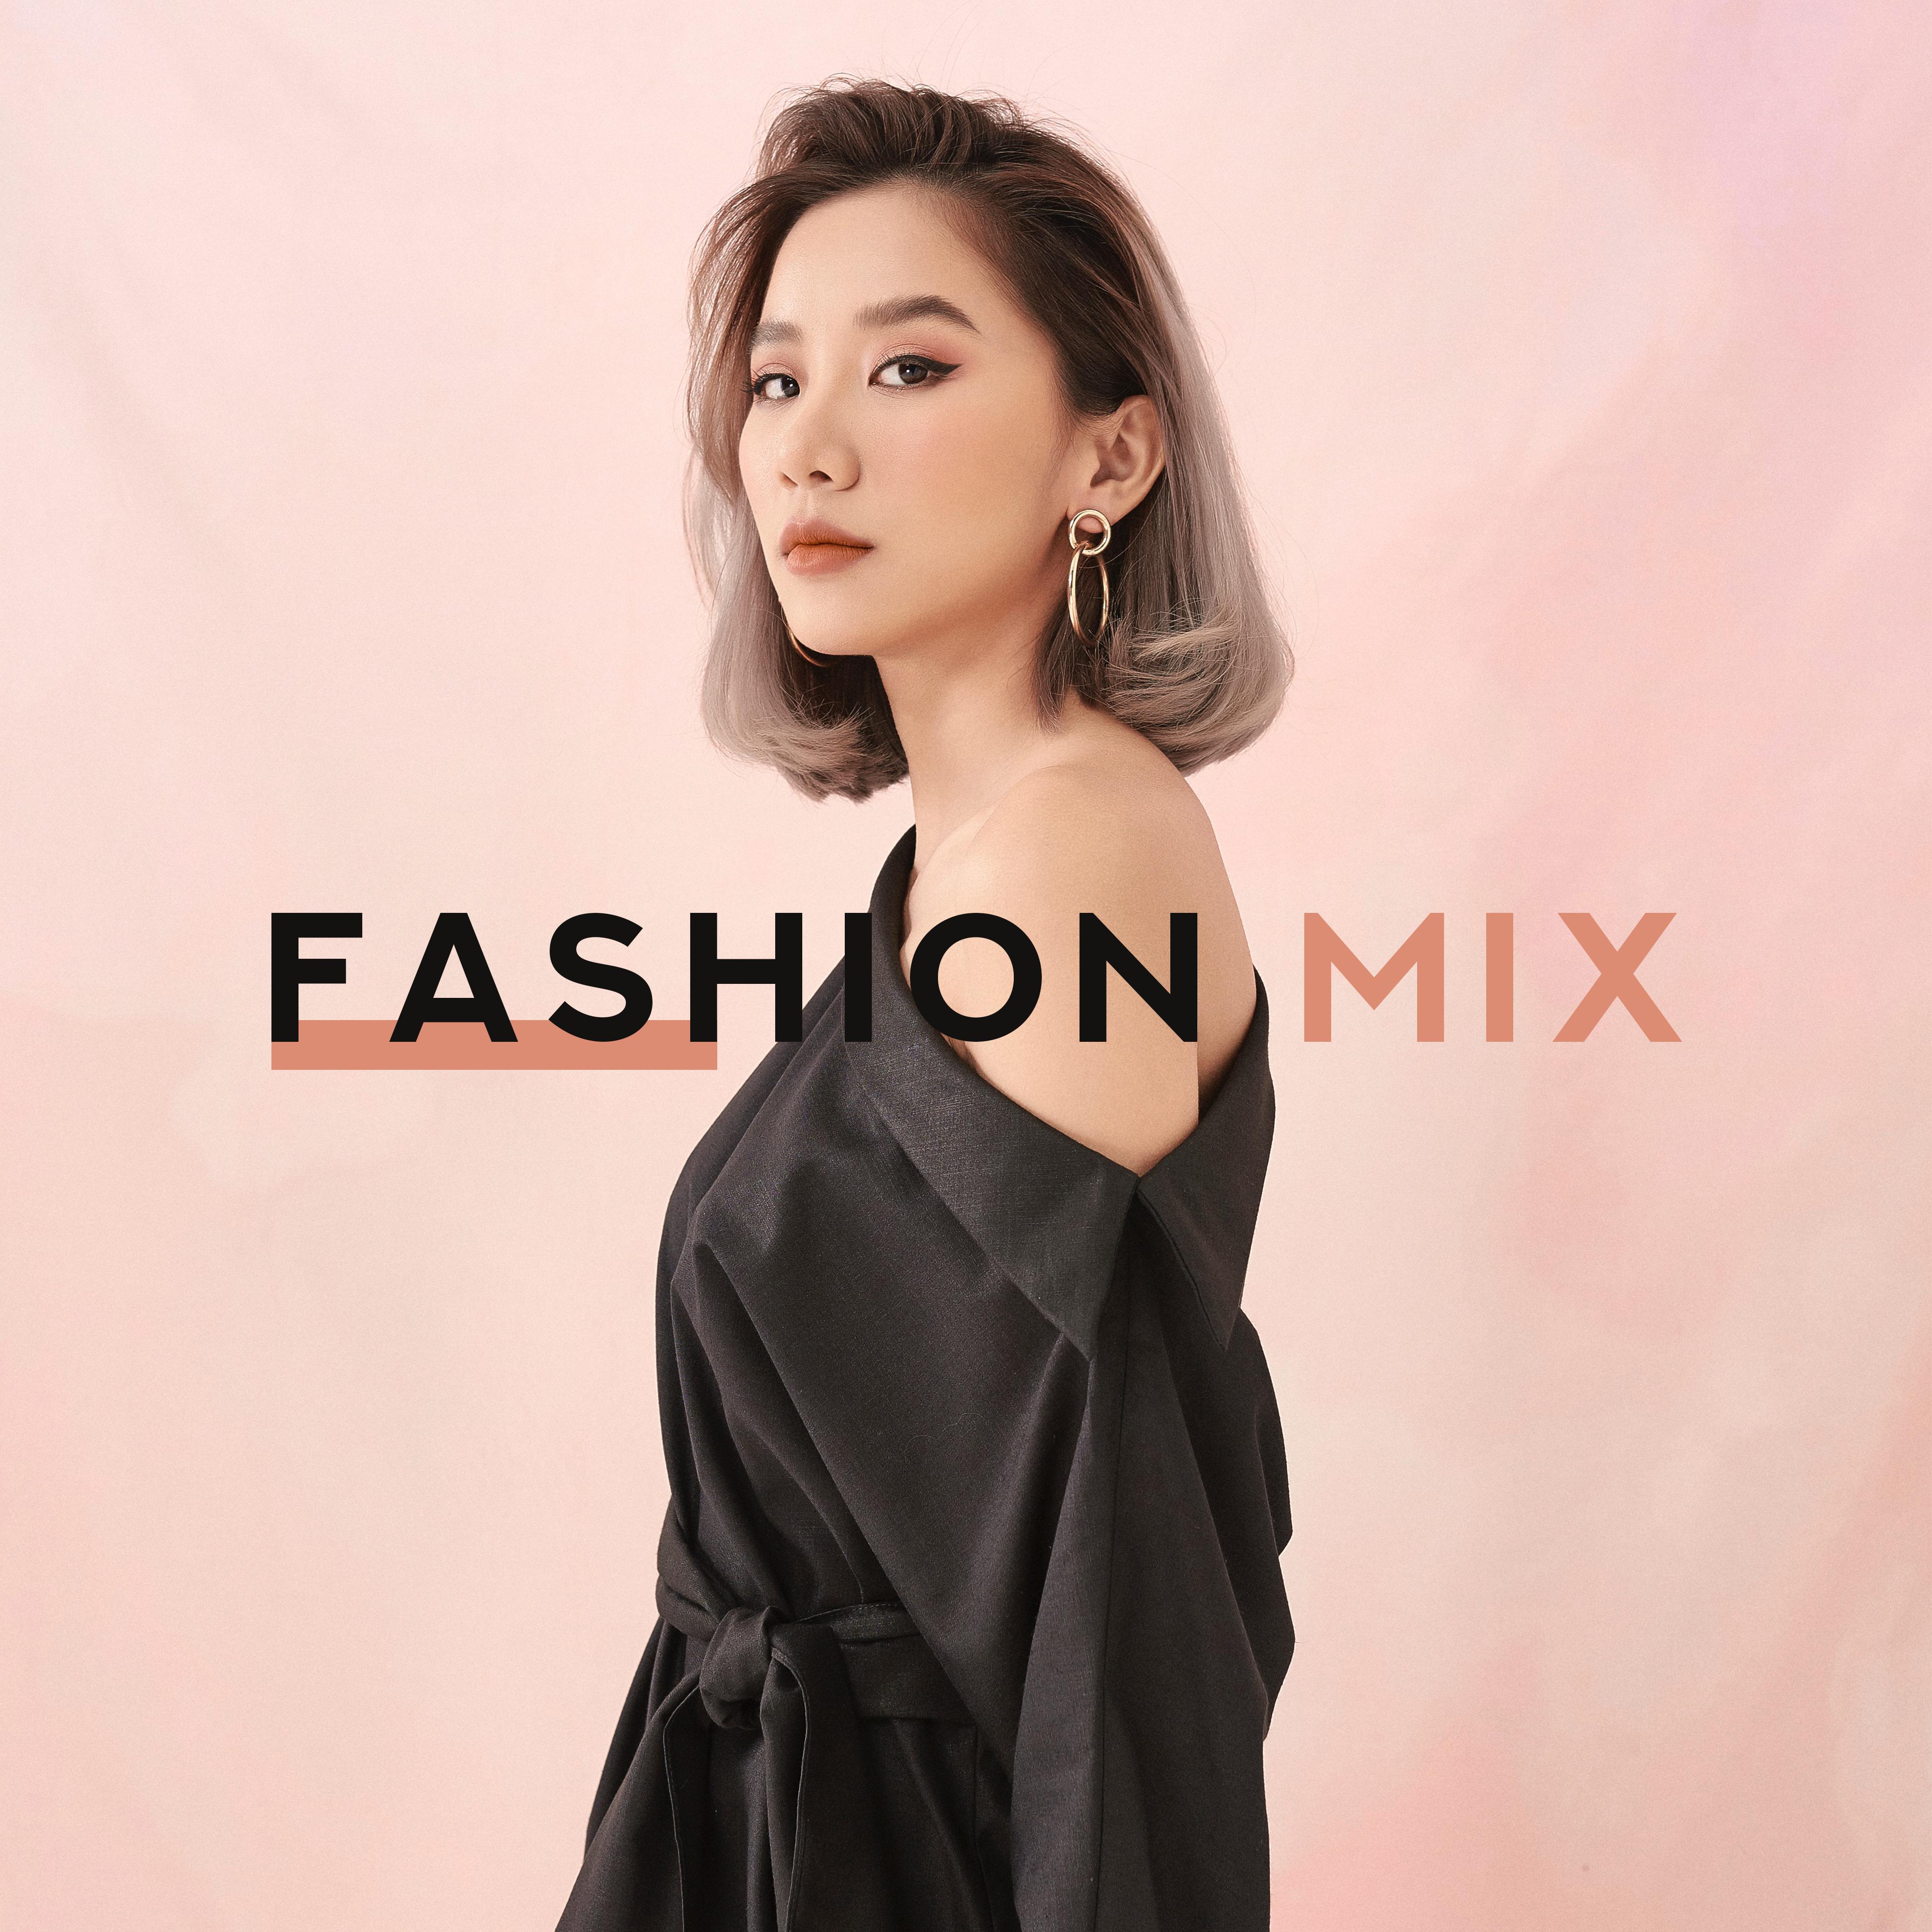 Fashion Mix  Runway Music 2020, Fashion Beats, Catwalk Music 2020